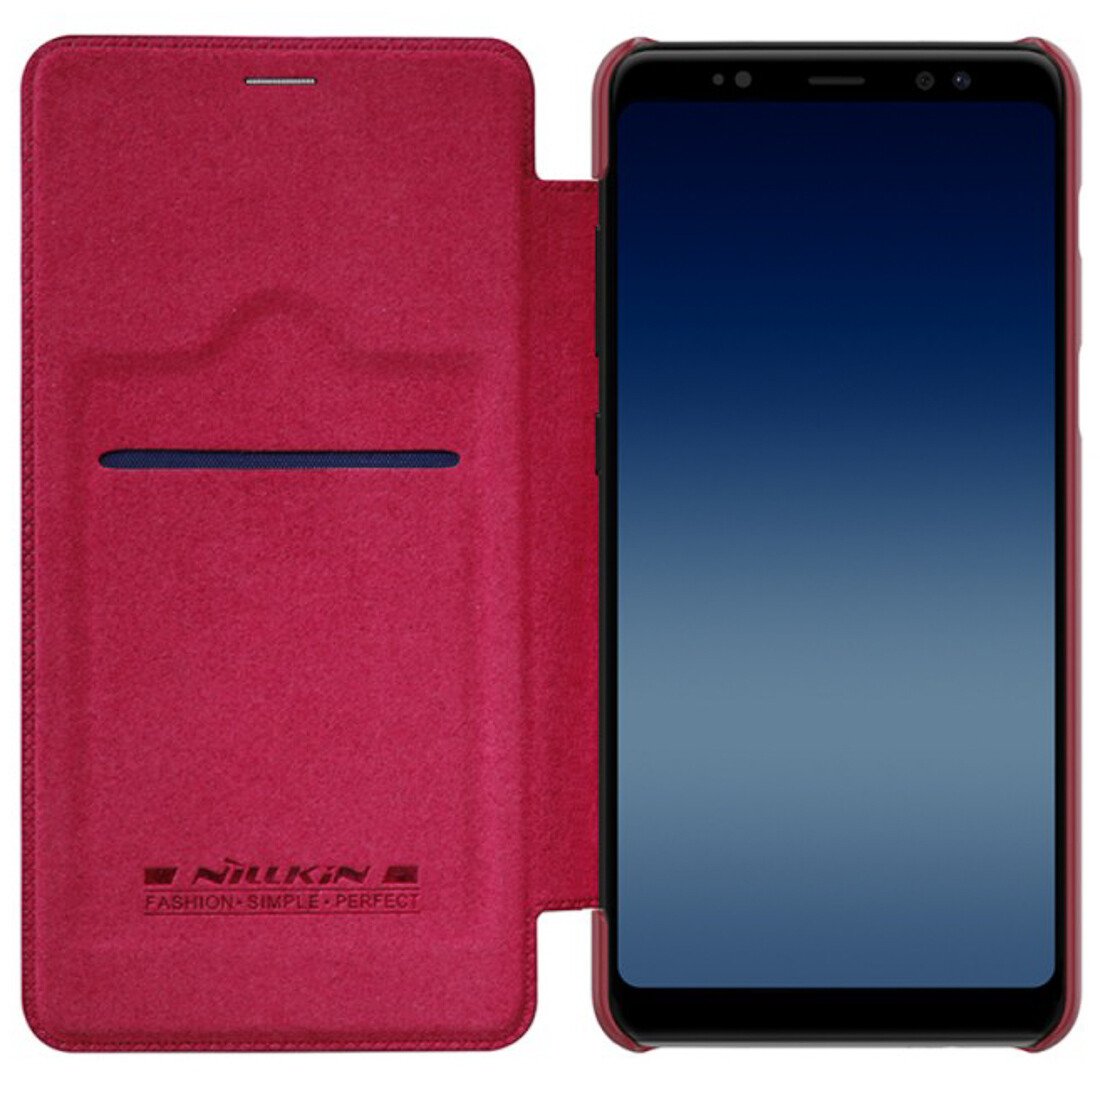 Husa Book Samsung Galaxy A8 2018, Nillkin Rosu Qin thumb